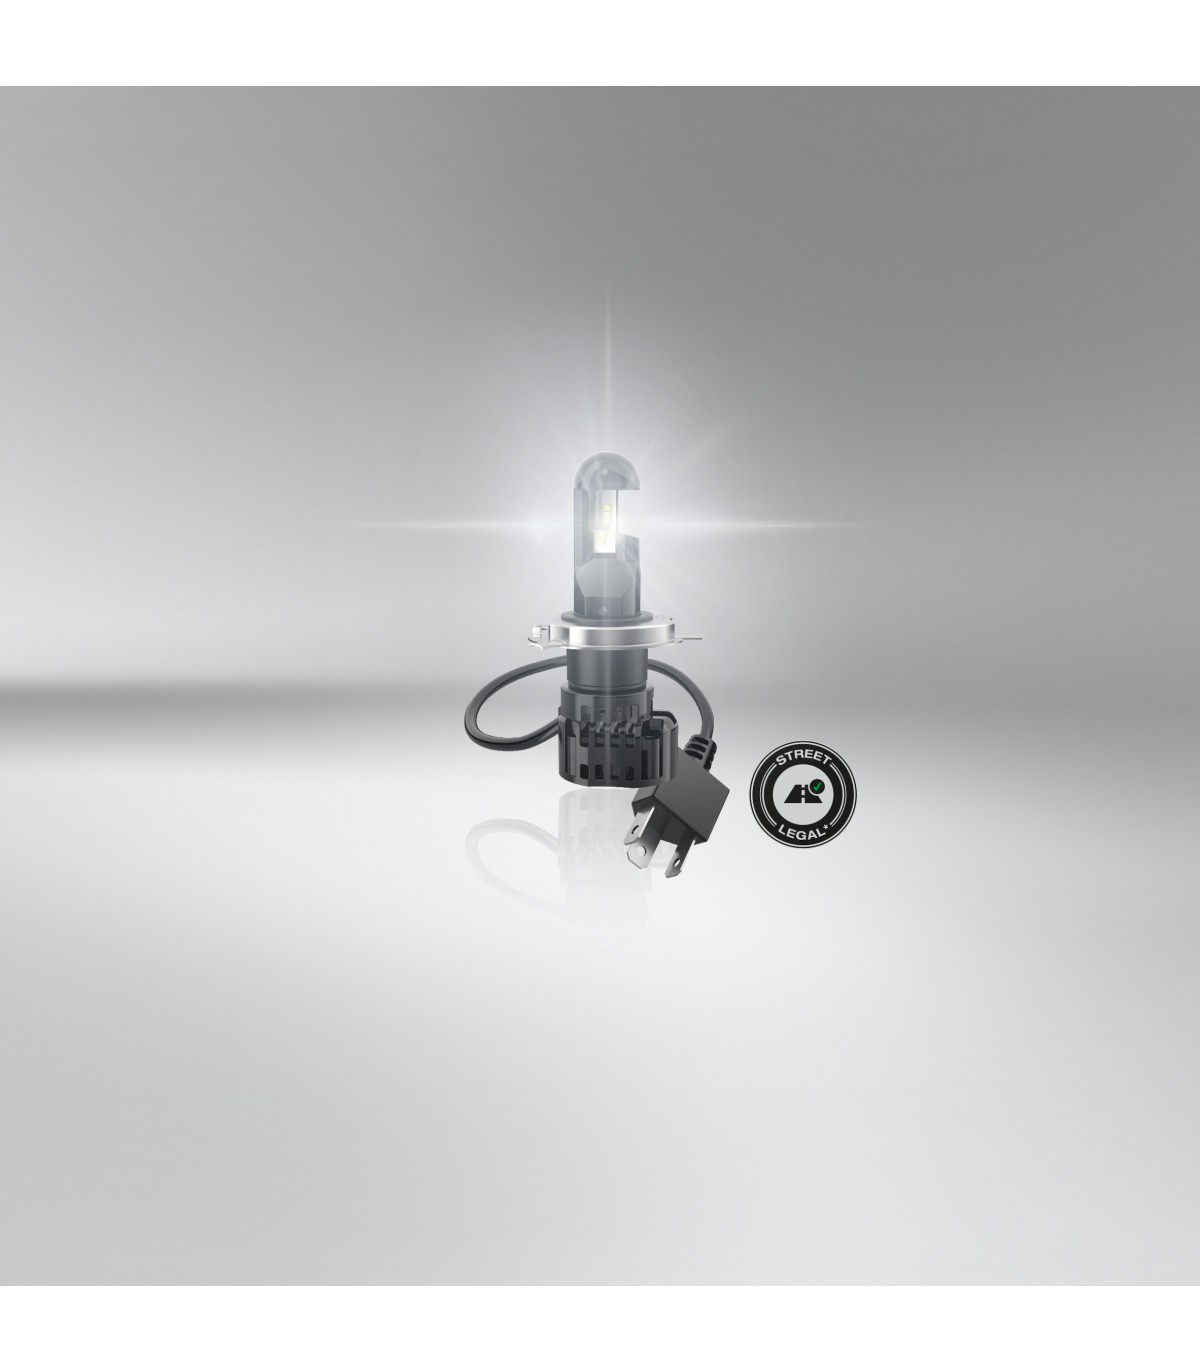 2 Ampoules LED Osram H4 - Équipement auto